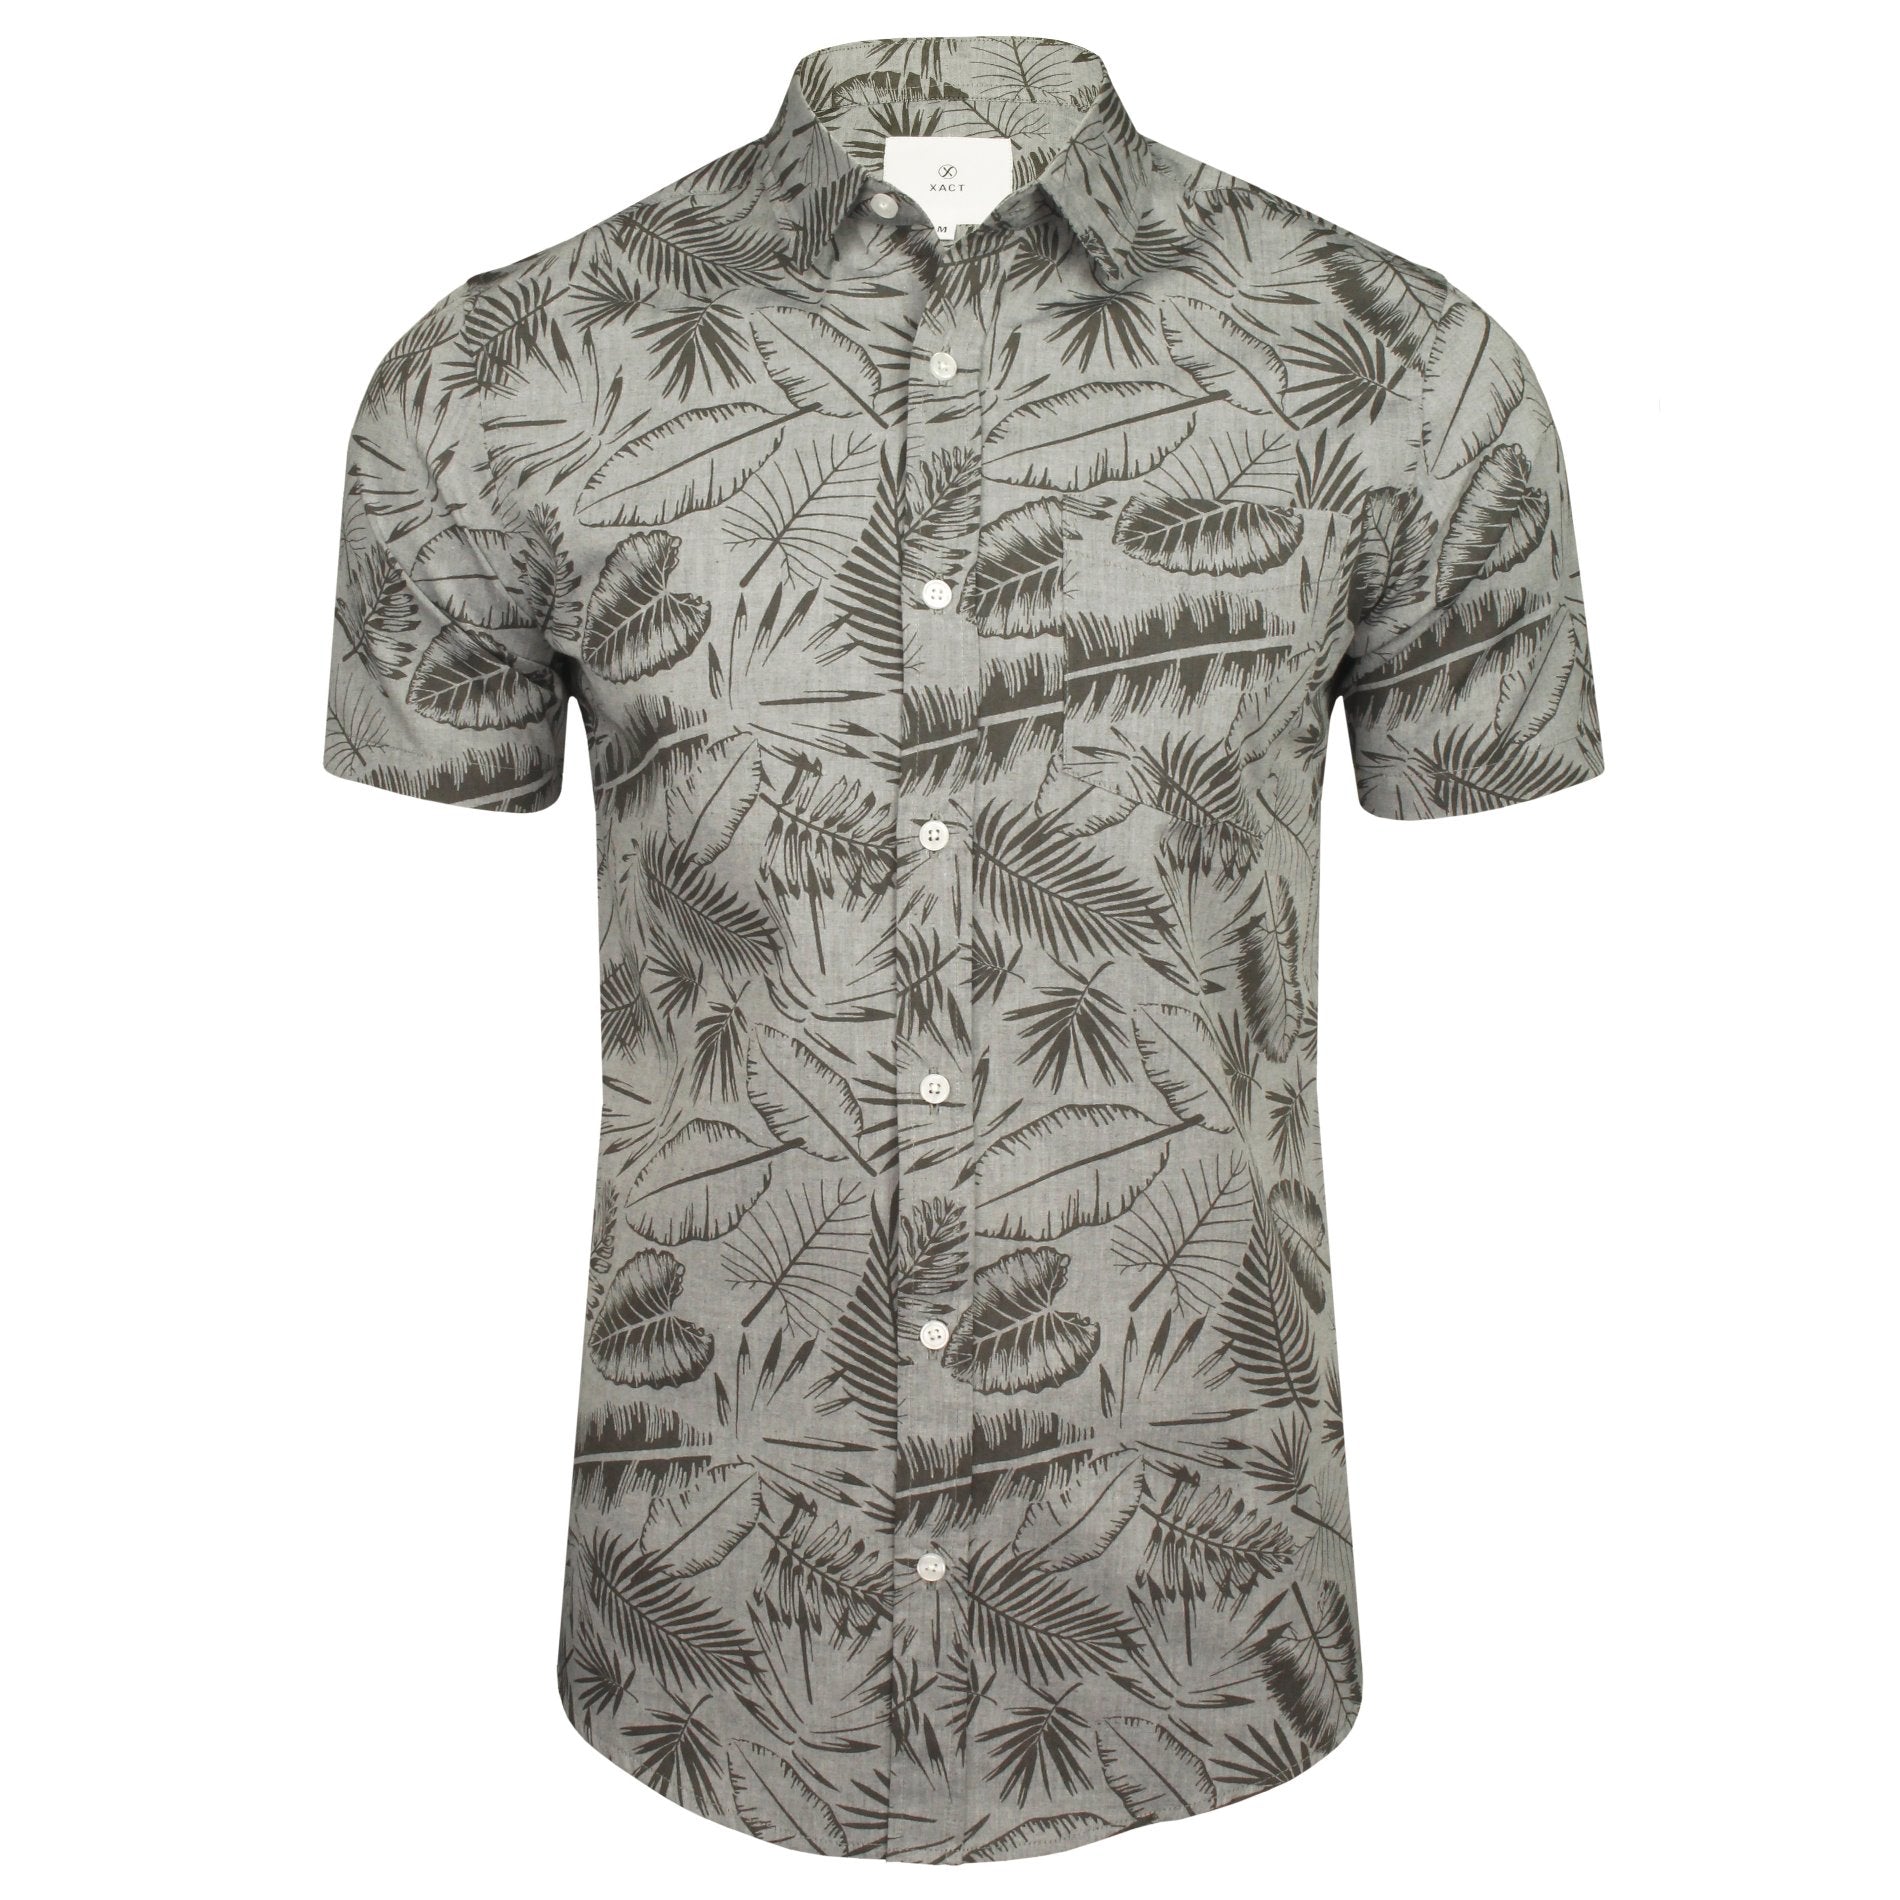 Xact Mens Cotton Hawaiian/ Floral Shirt - Short Sleeved-Main Image